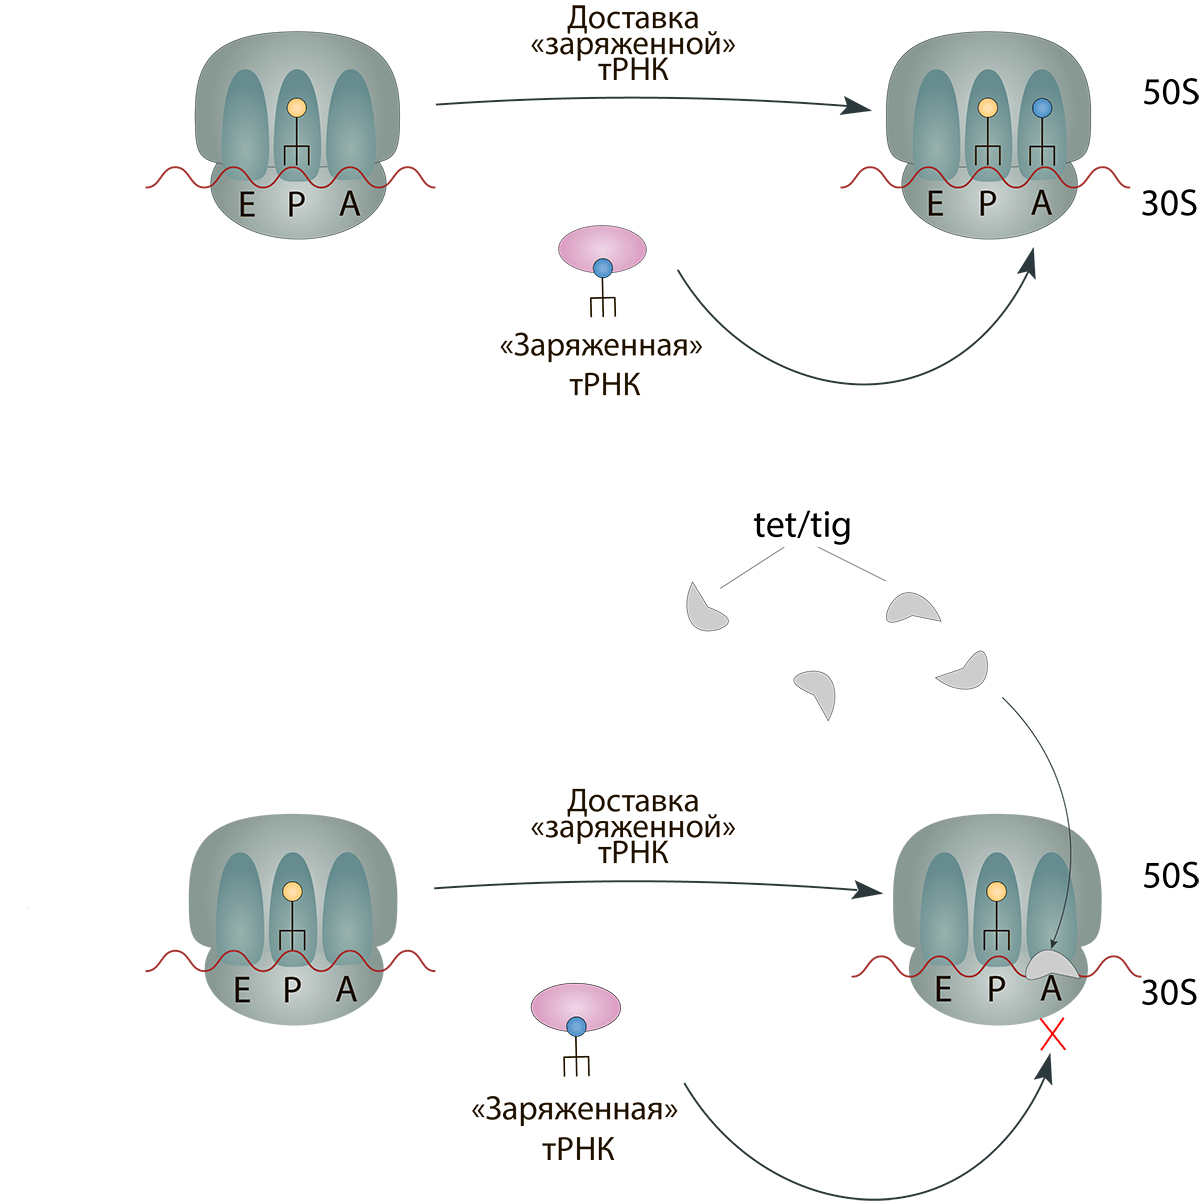 Механизм действия тетрациклинов и тигециклина